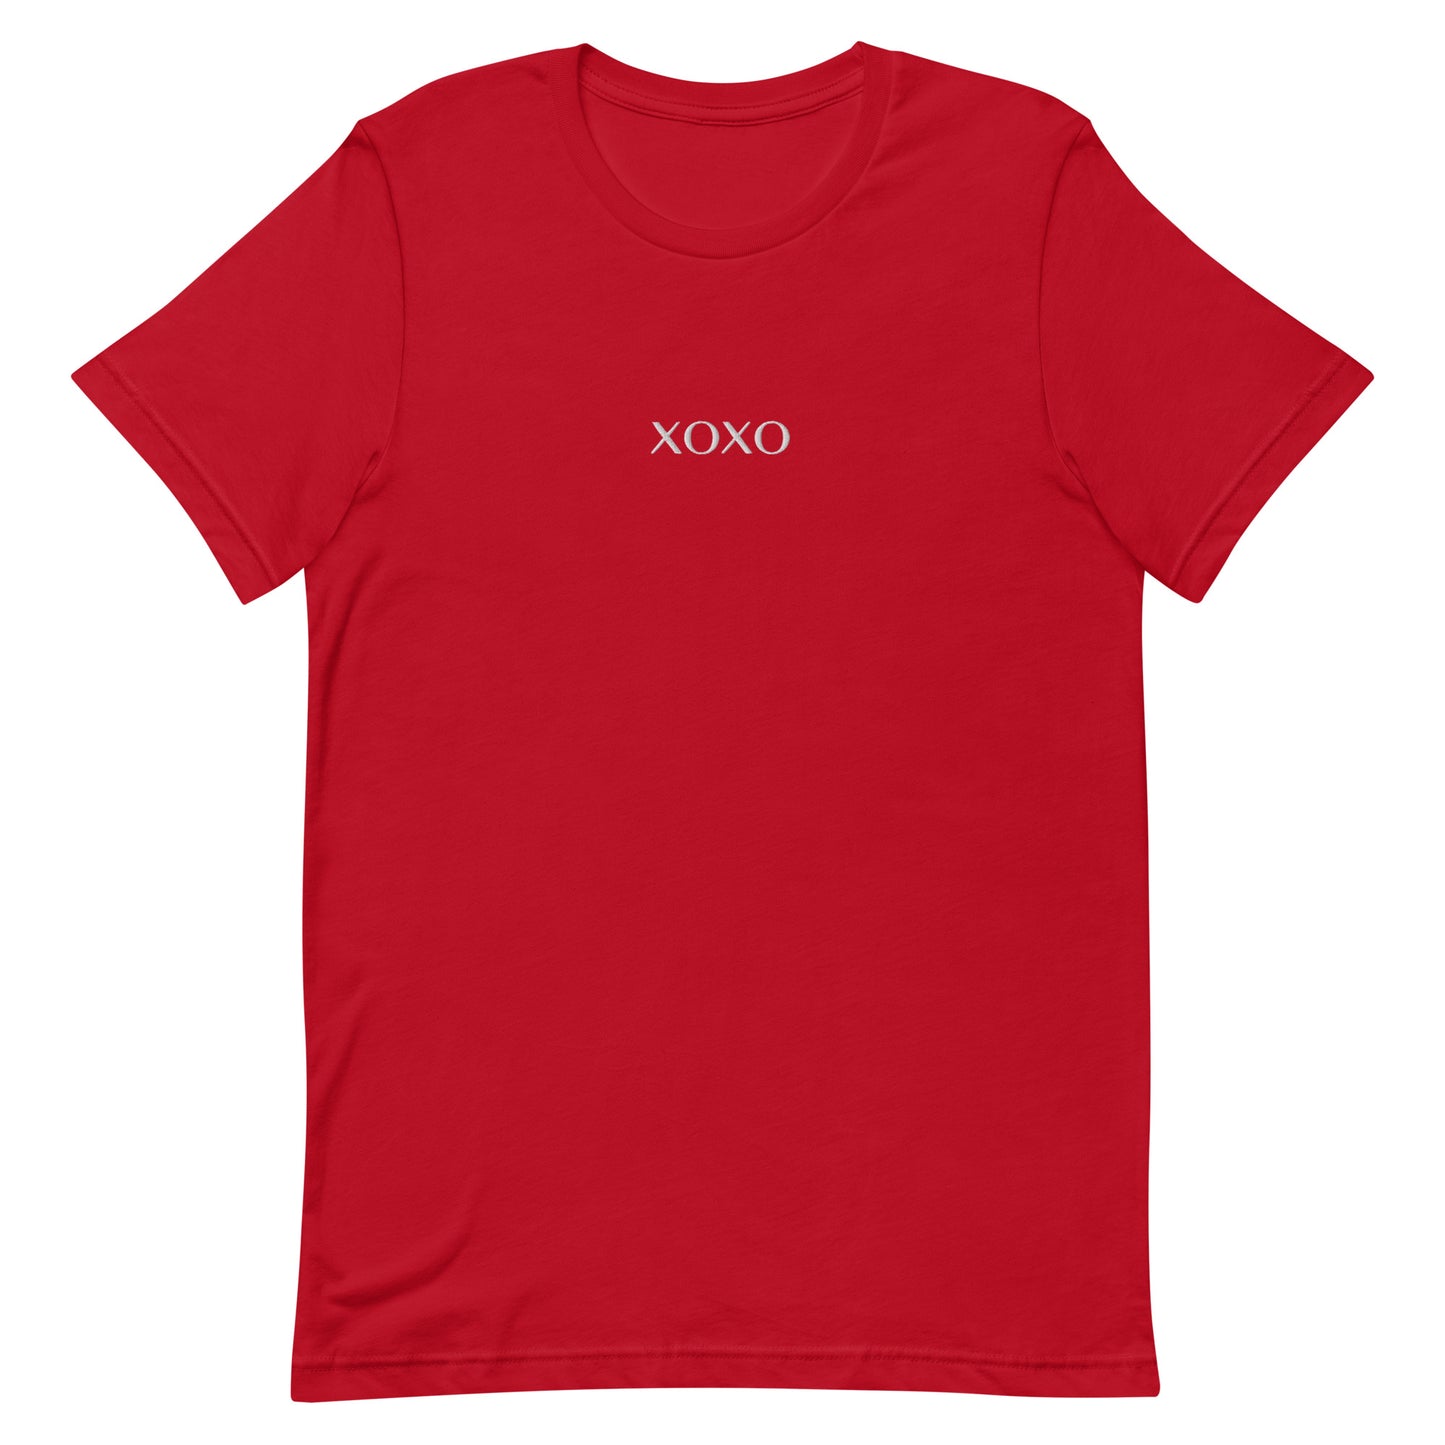 XOXO Embroidered Unisex t-shirt